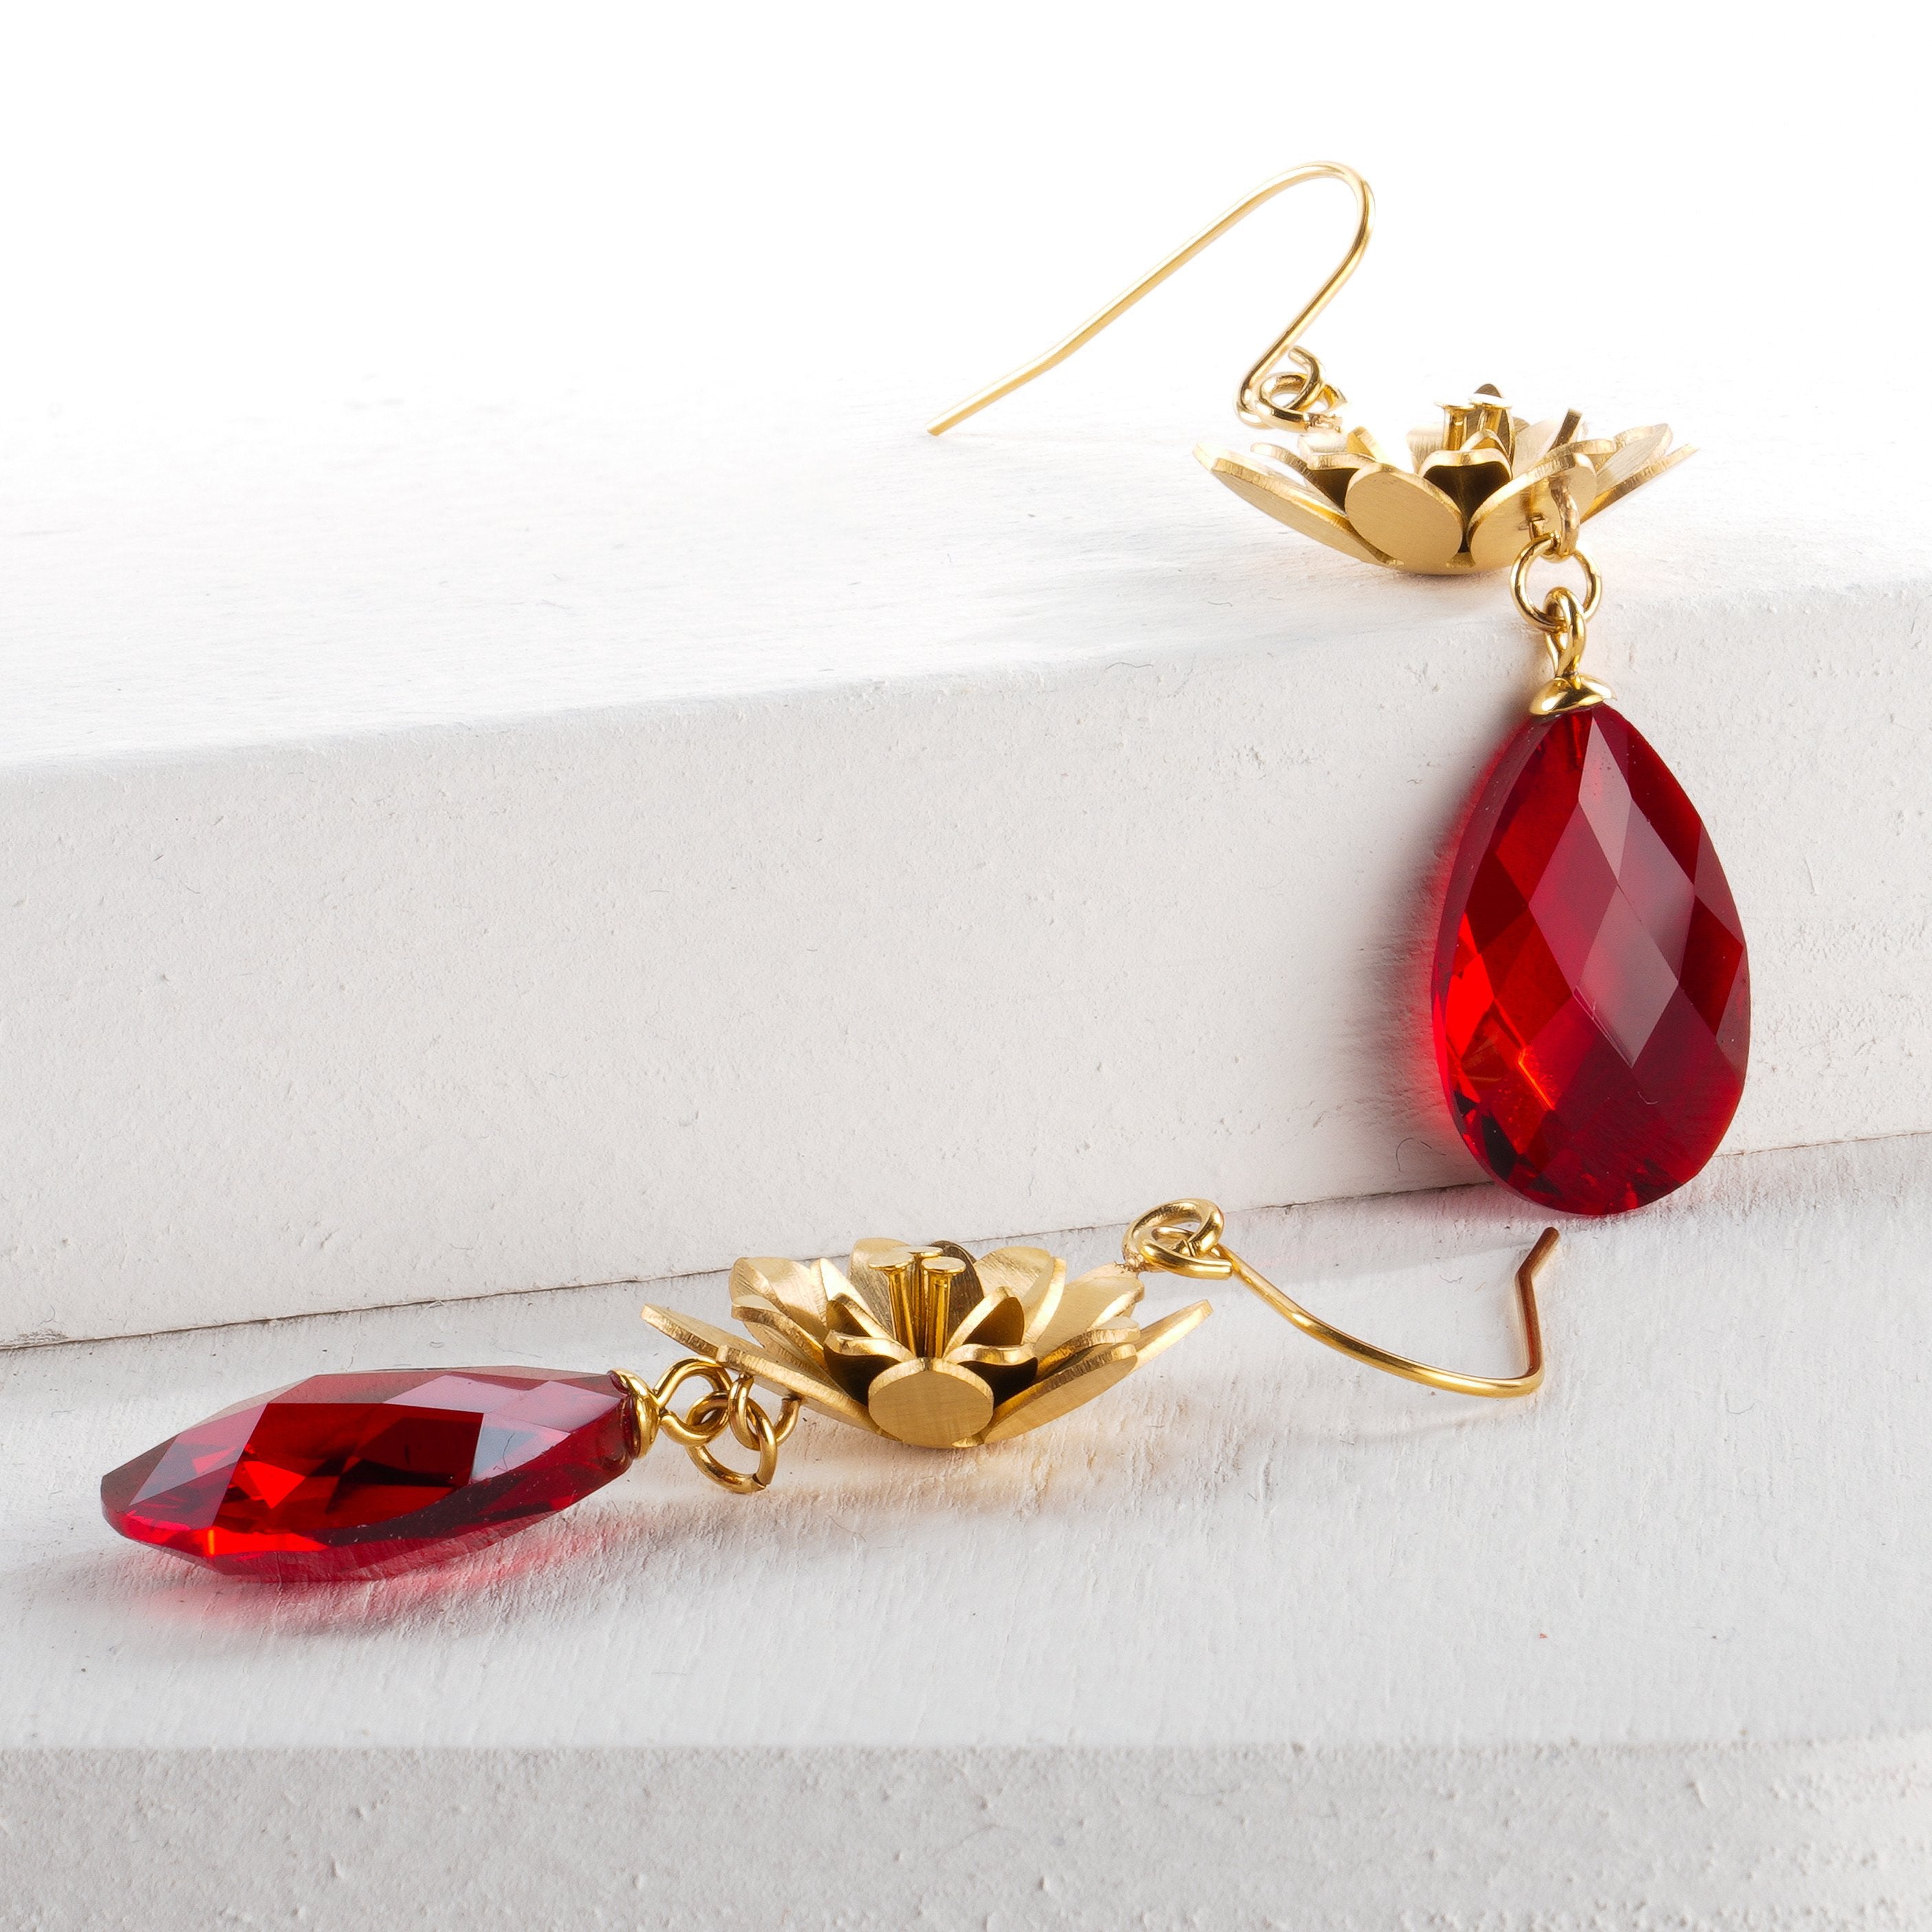 Divinia earrings - Ruby red